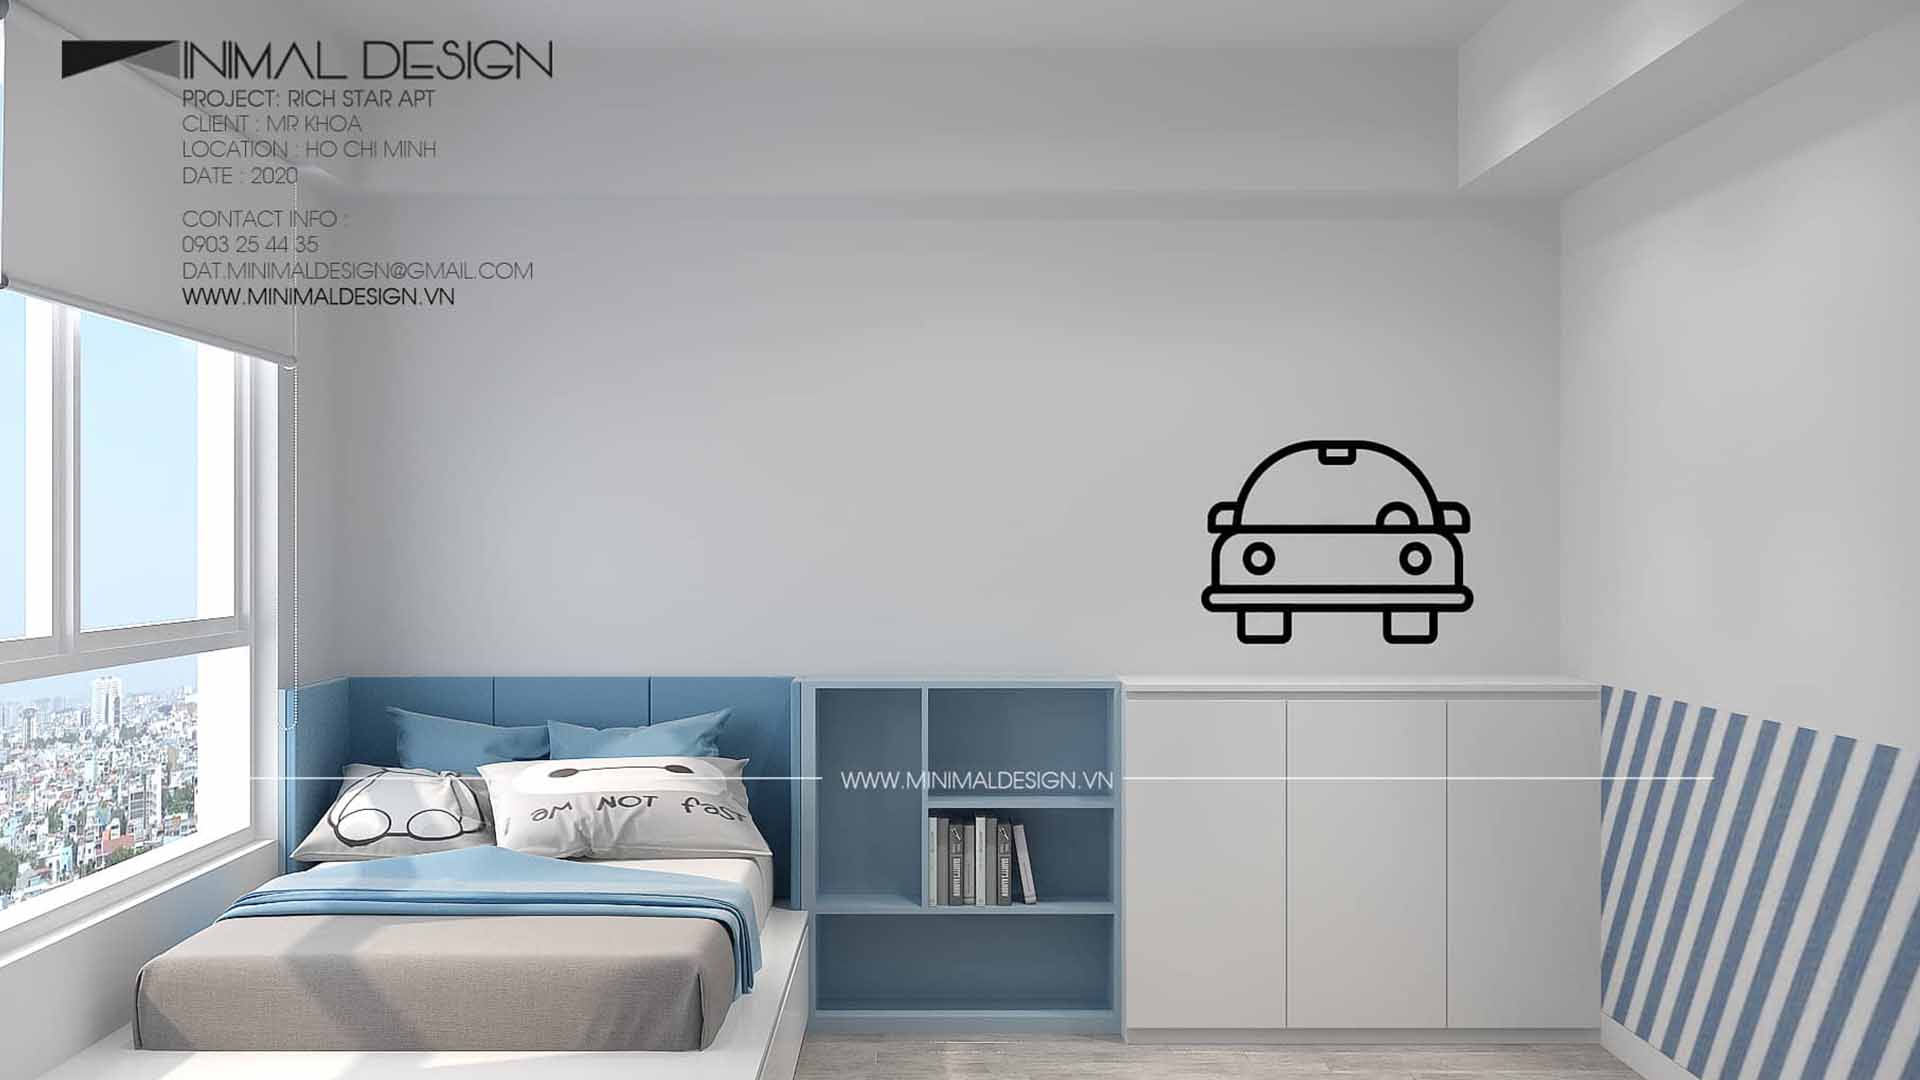 Thiết kế phòng ngủ cho con tưởng chừng đơn giản nhưng phải cân nhắc rất nhiều thứ như: sở thích, thói quen, độ tuổi,...